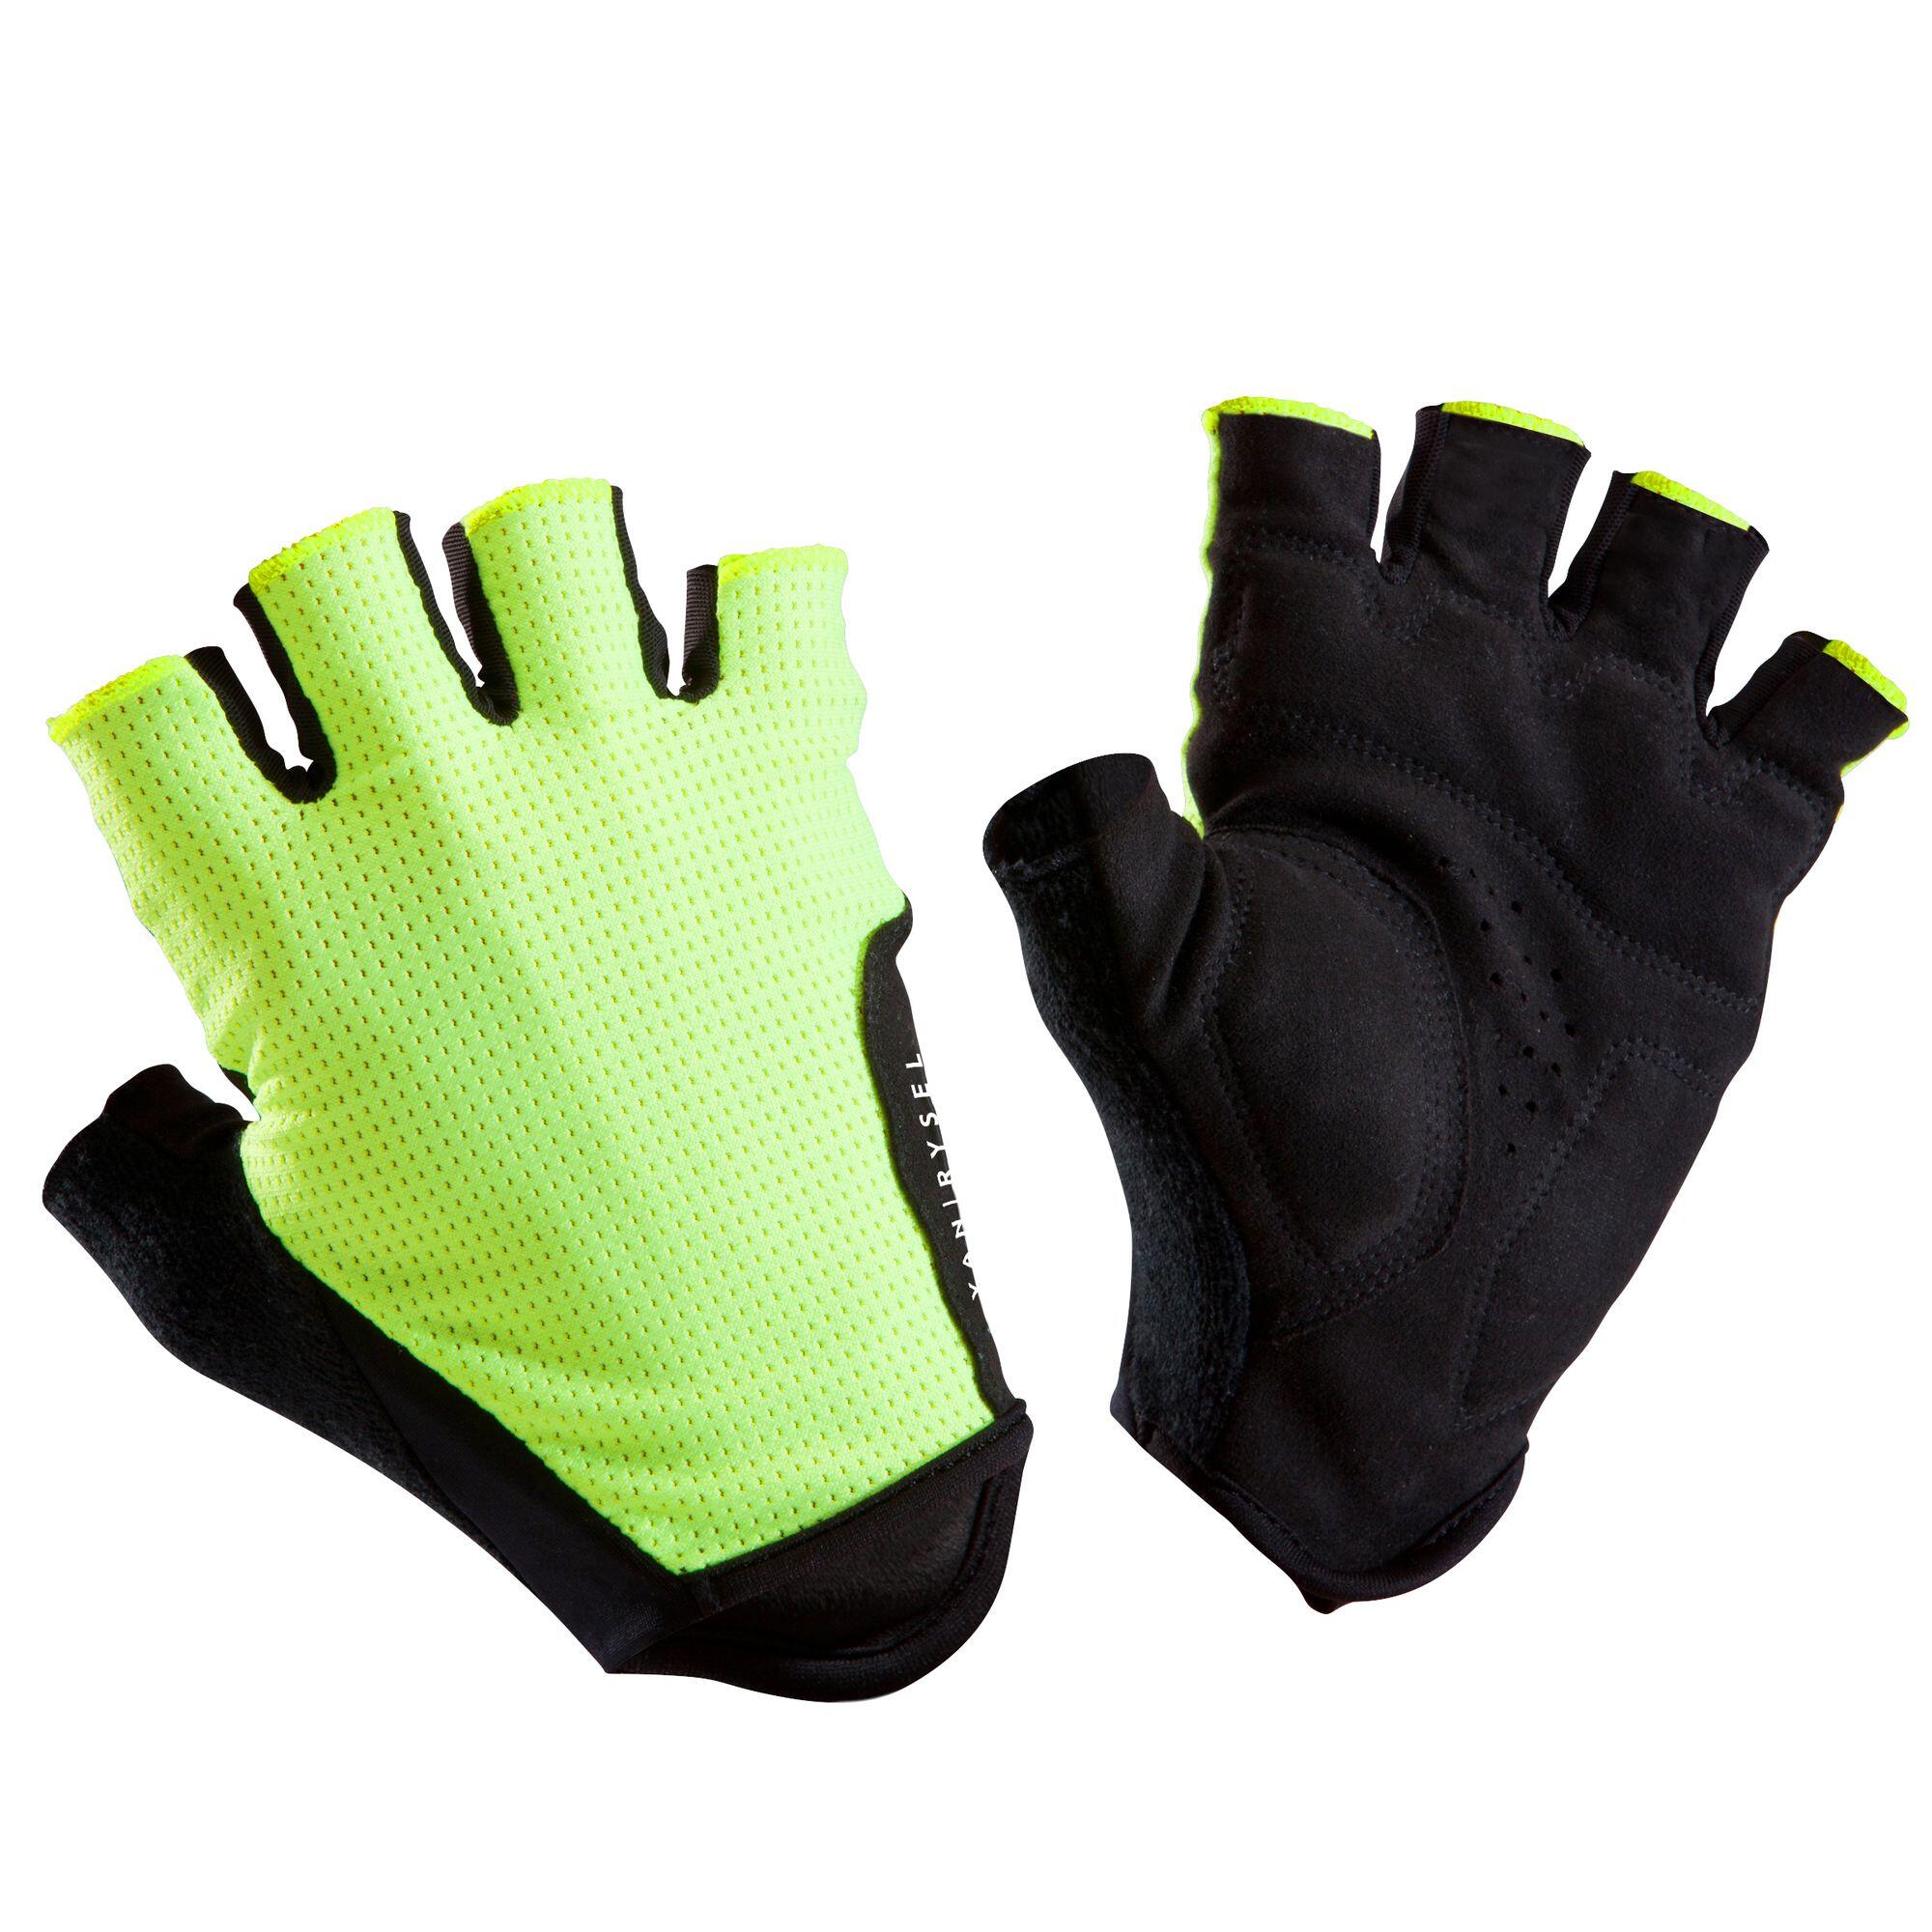 Cycling Gloves - Buy Bike \u0026 Cycle 